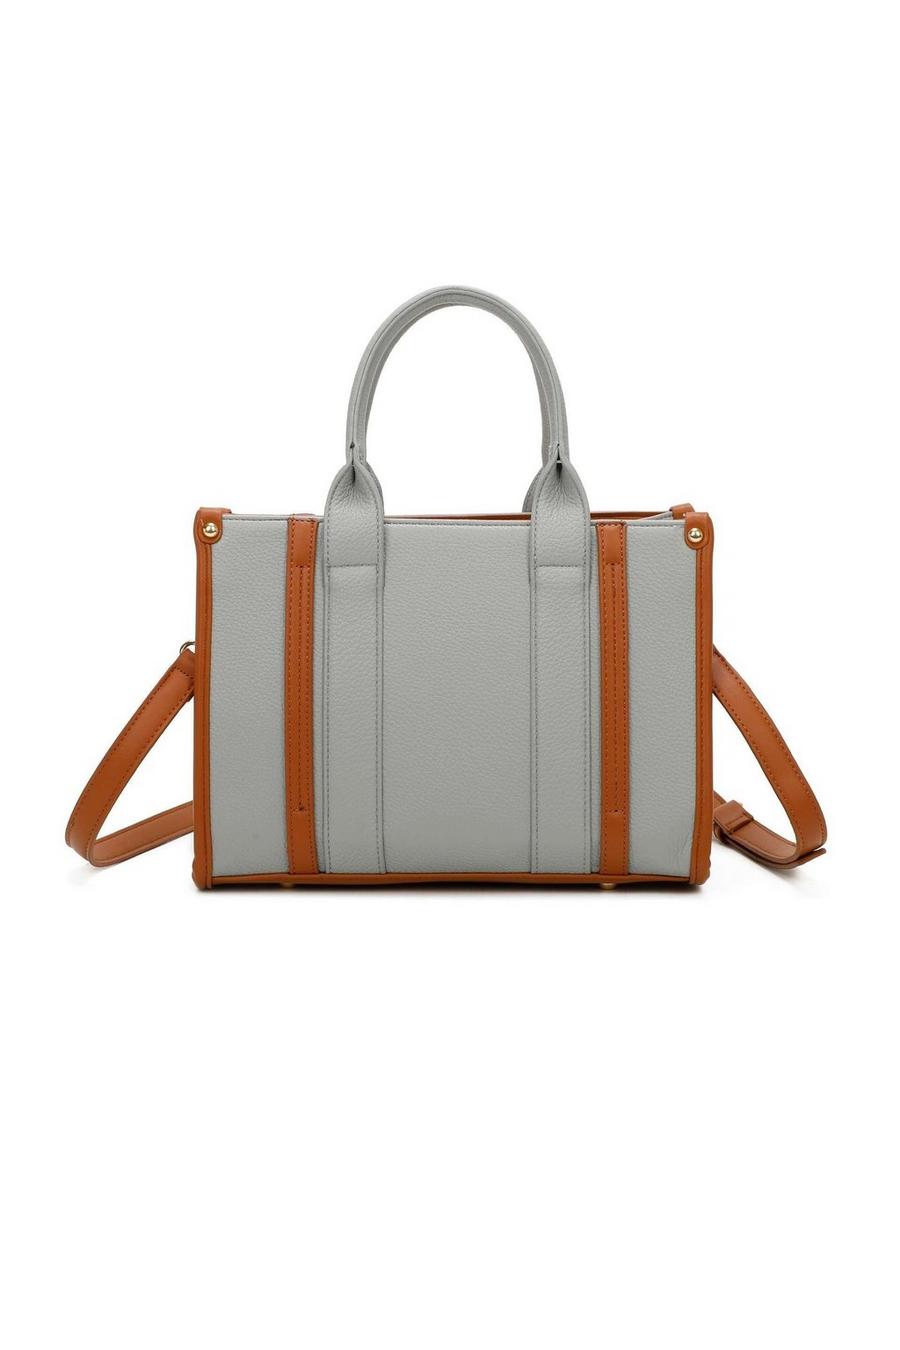 Grey Large PU Leather Double Handle Handbag Tote Shopper Shoulder Bag image number 1